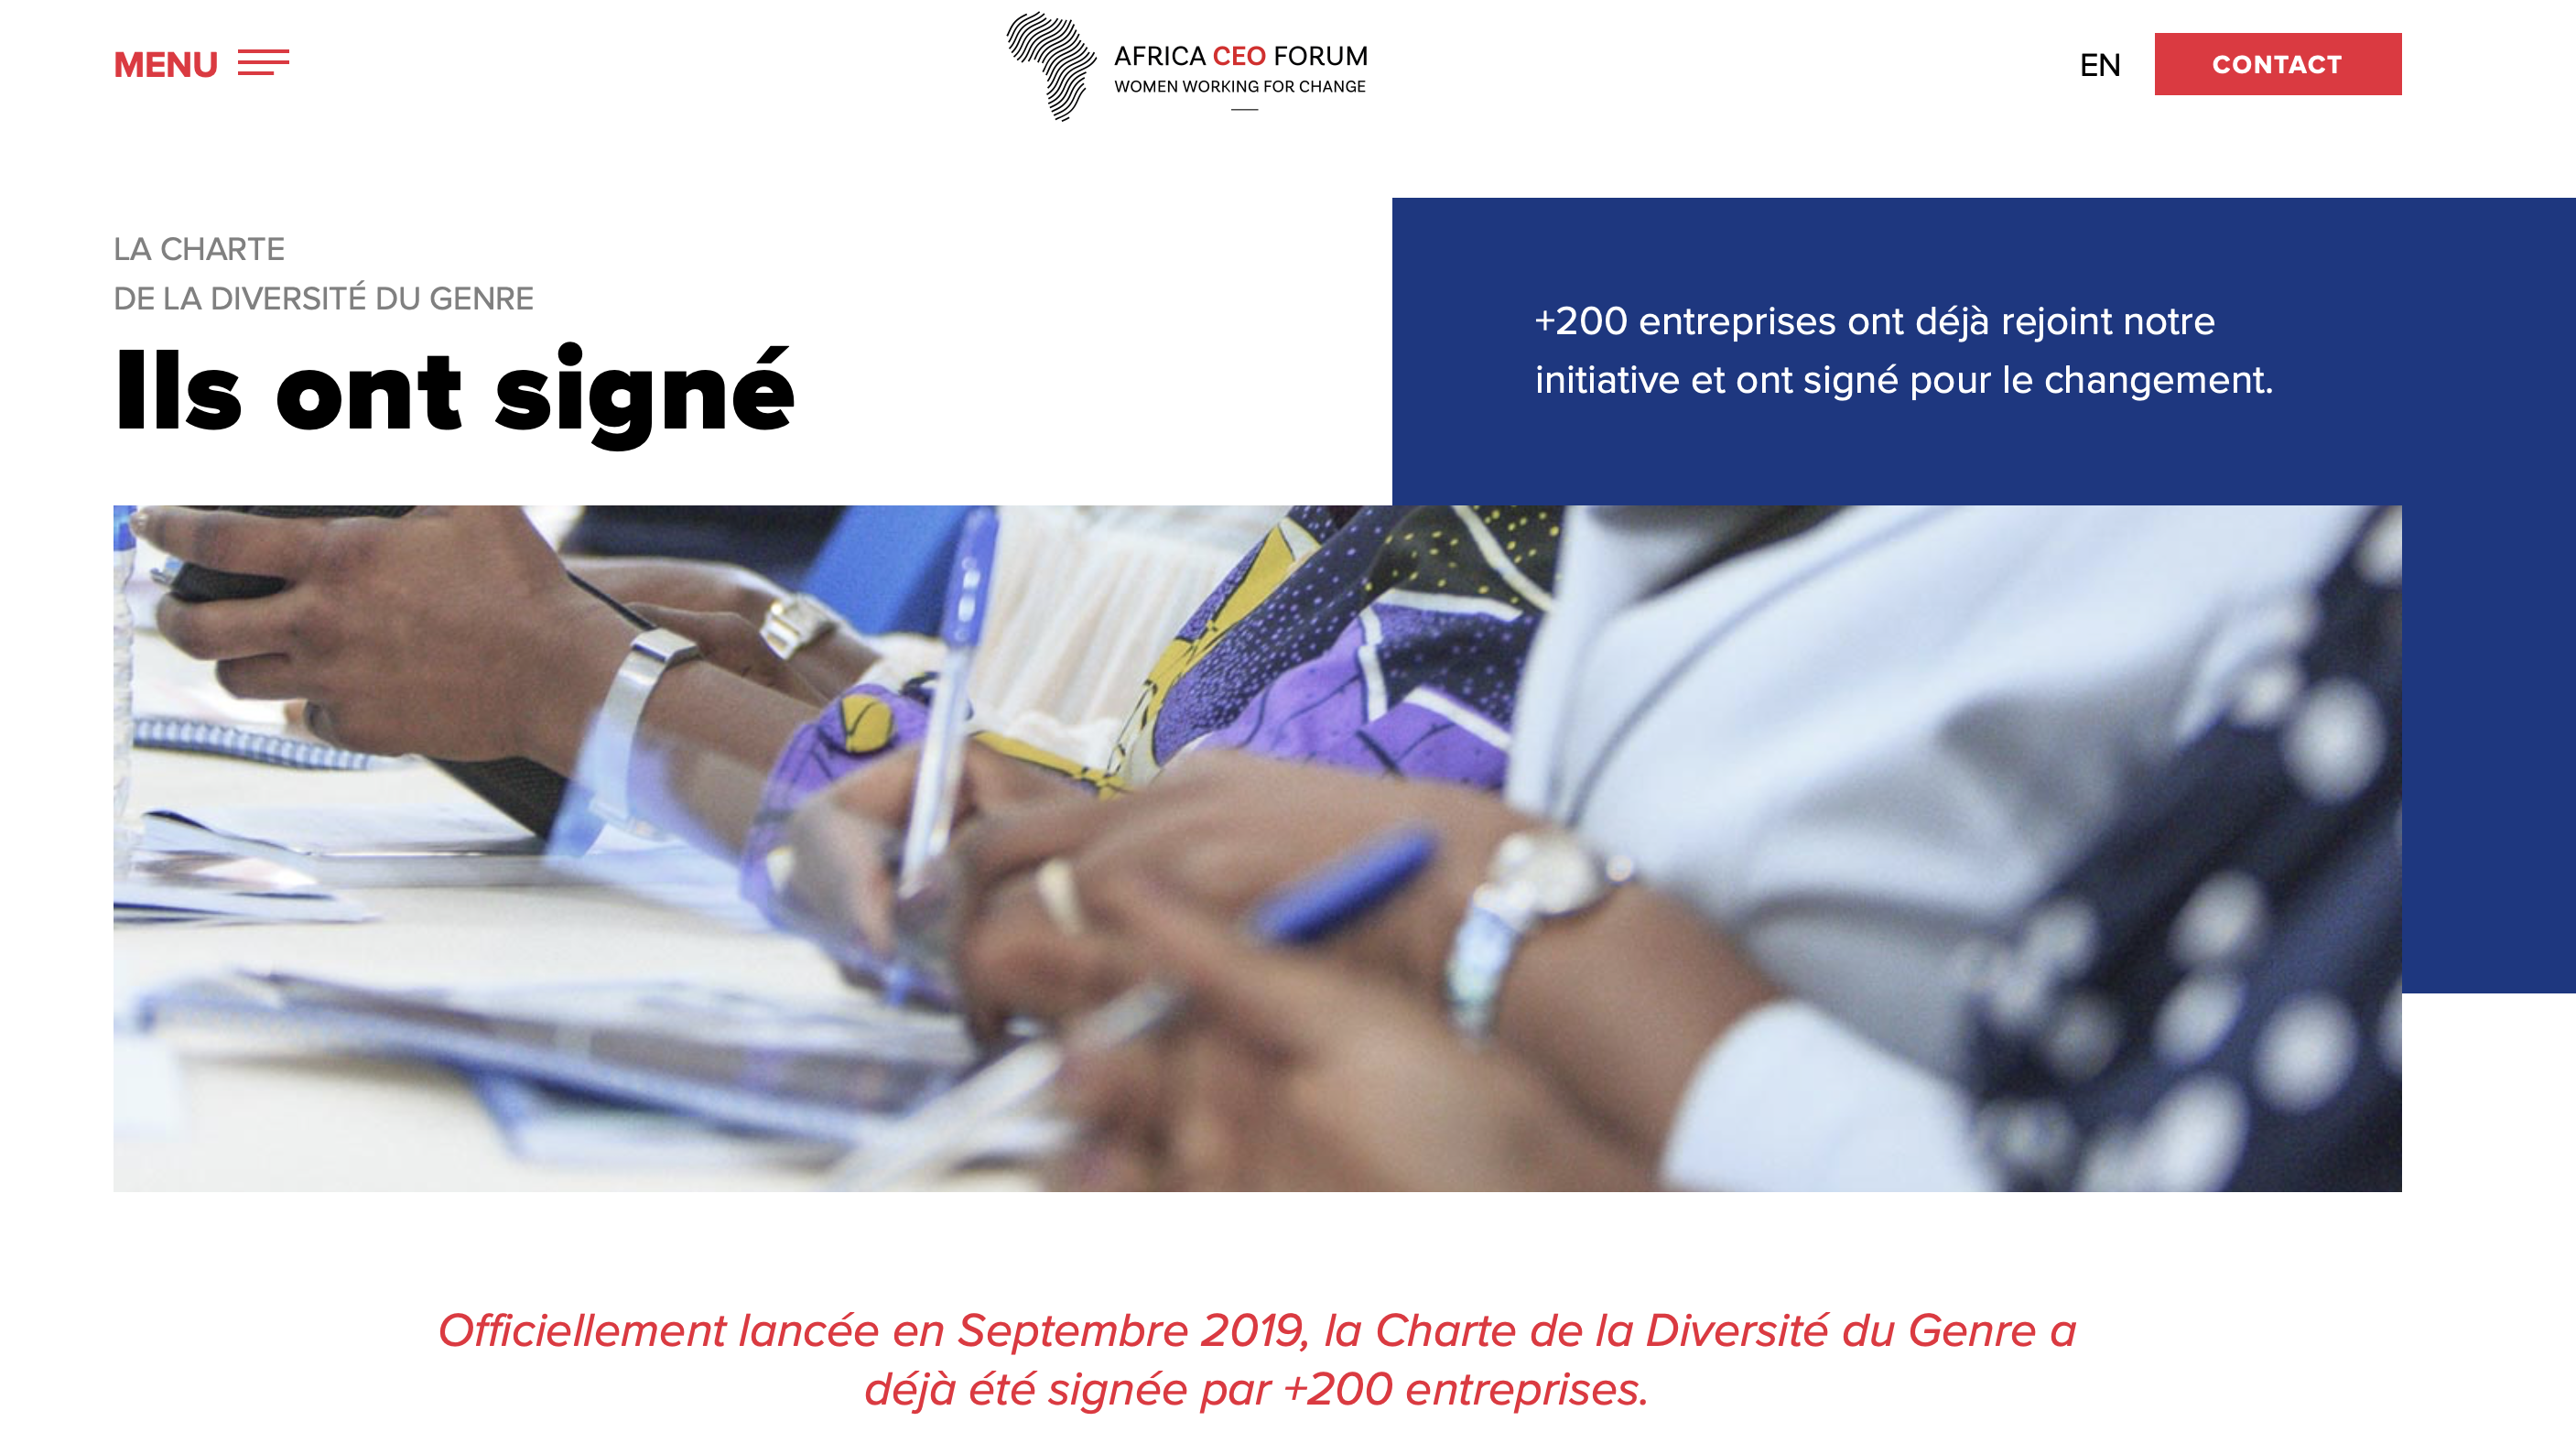 Découvrez les + de 200 entreprises signataires de la Charte de la Diversité du Genre, initiative de Women Working for Change (WFC) pour la diversité du genre en Afrique